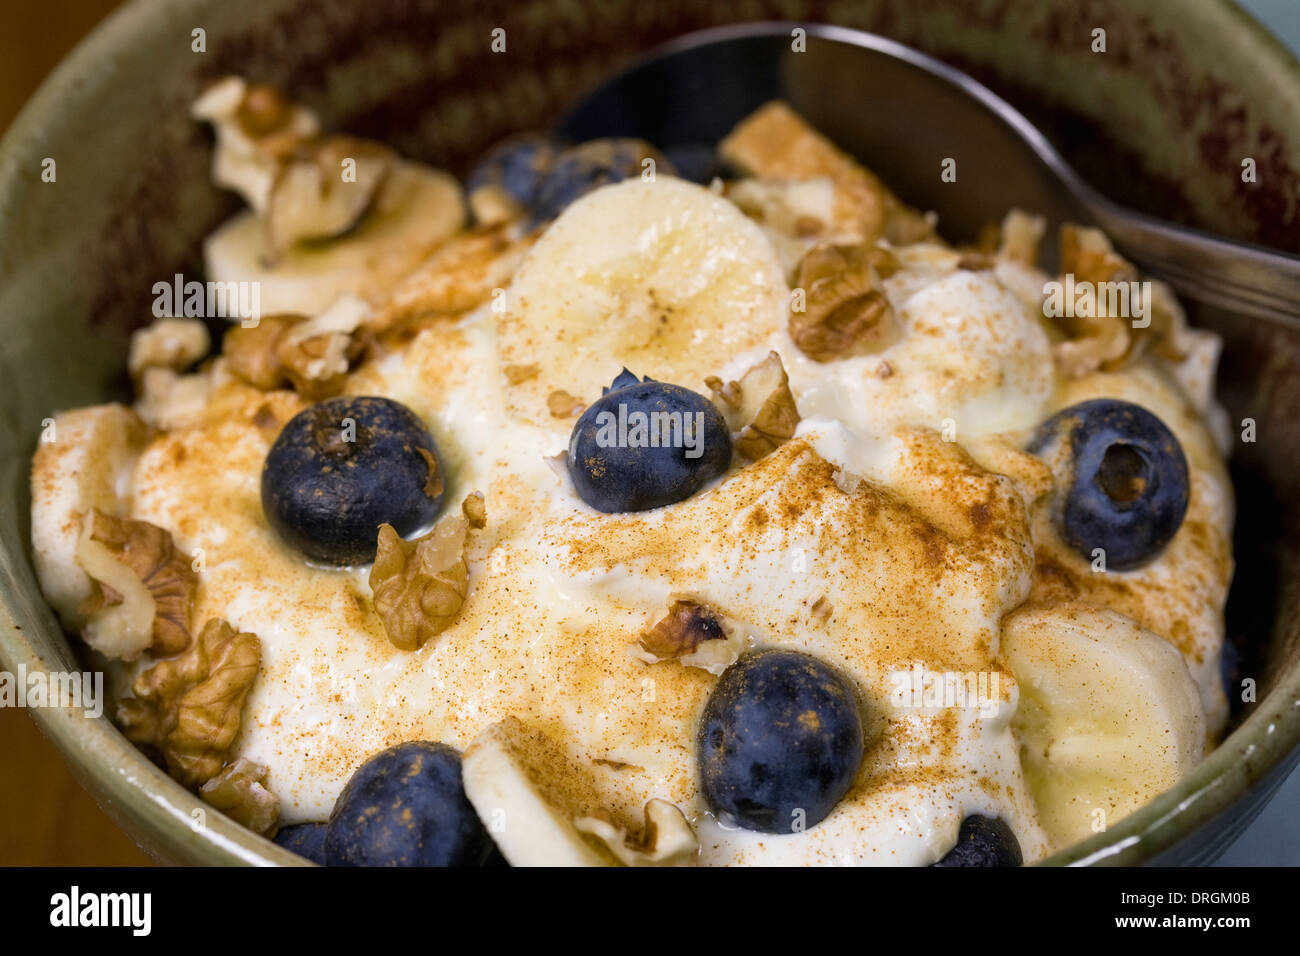 Ein gesundes Frühstück. Joghurt mit Banane, Heidelbeeren, Walnüssen und einer Prise Zimt. Stockfoto